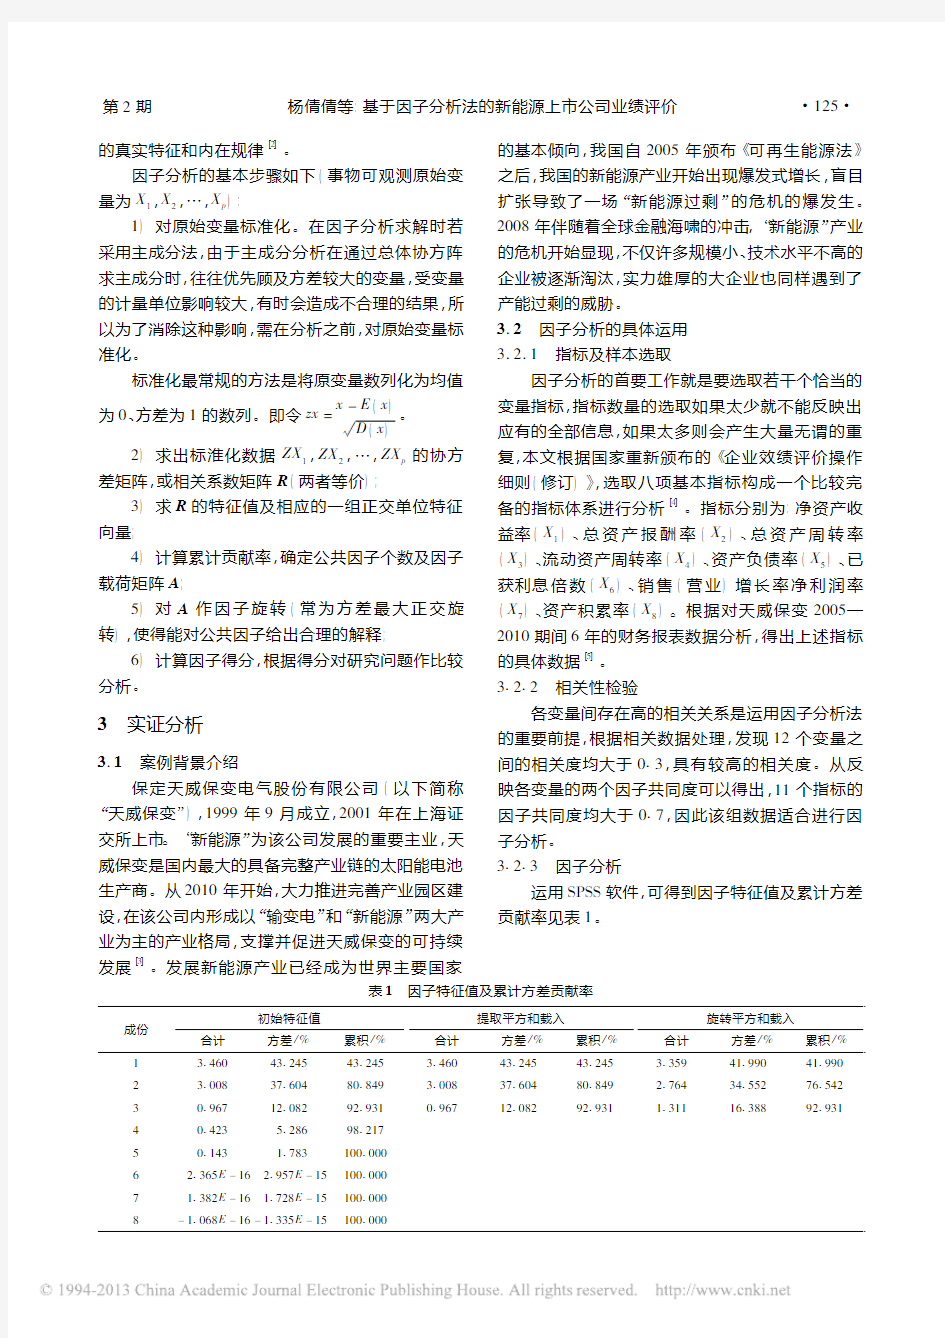 基于因子分析法的新能源上市公司业绩评价_杨倩倩